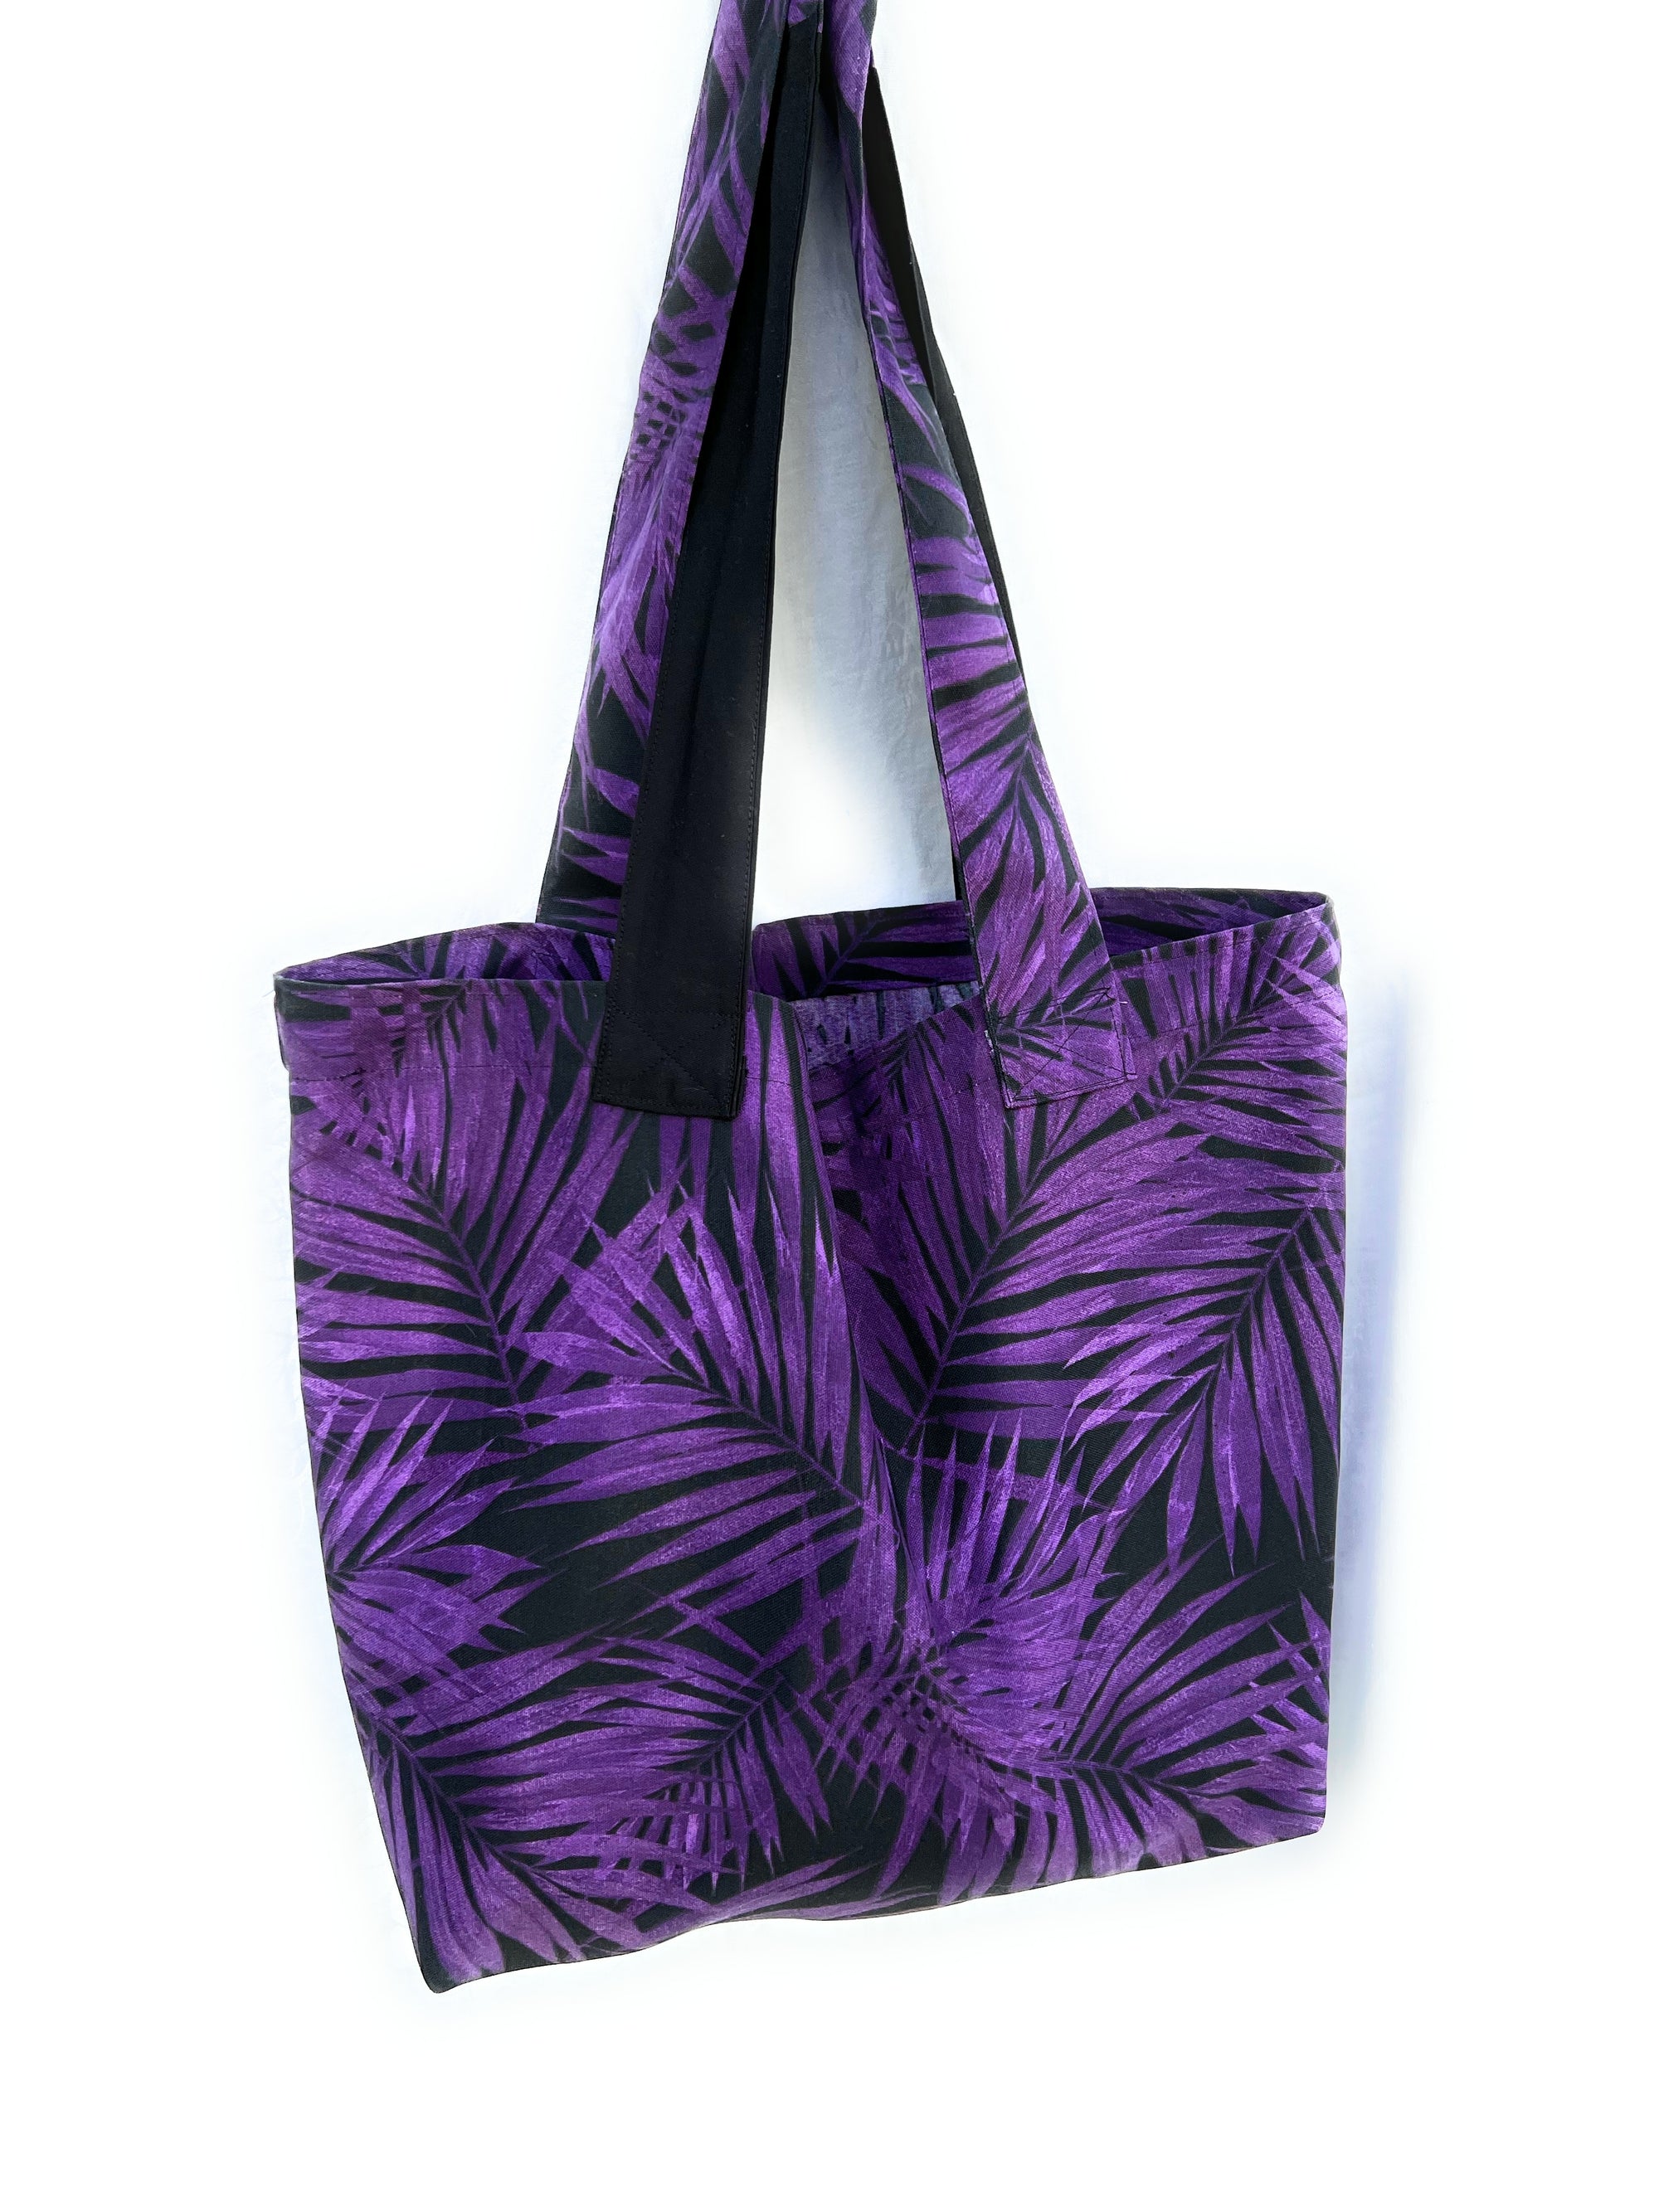 Carry all Grocery Market Tote Bag Waterproof Purple Black Leaves